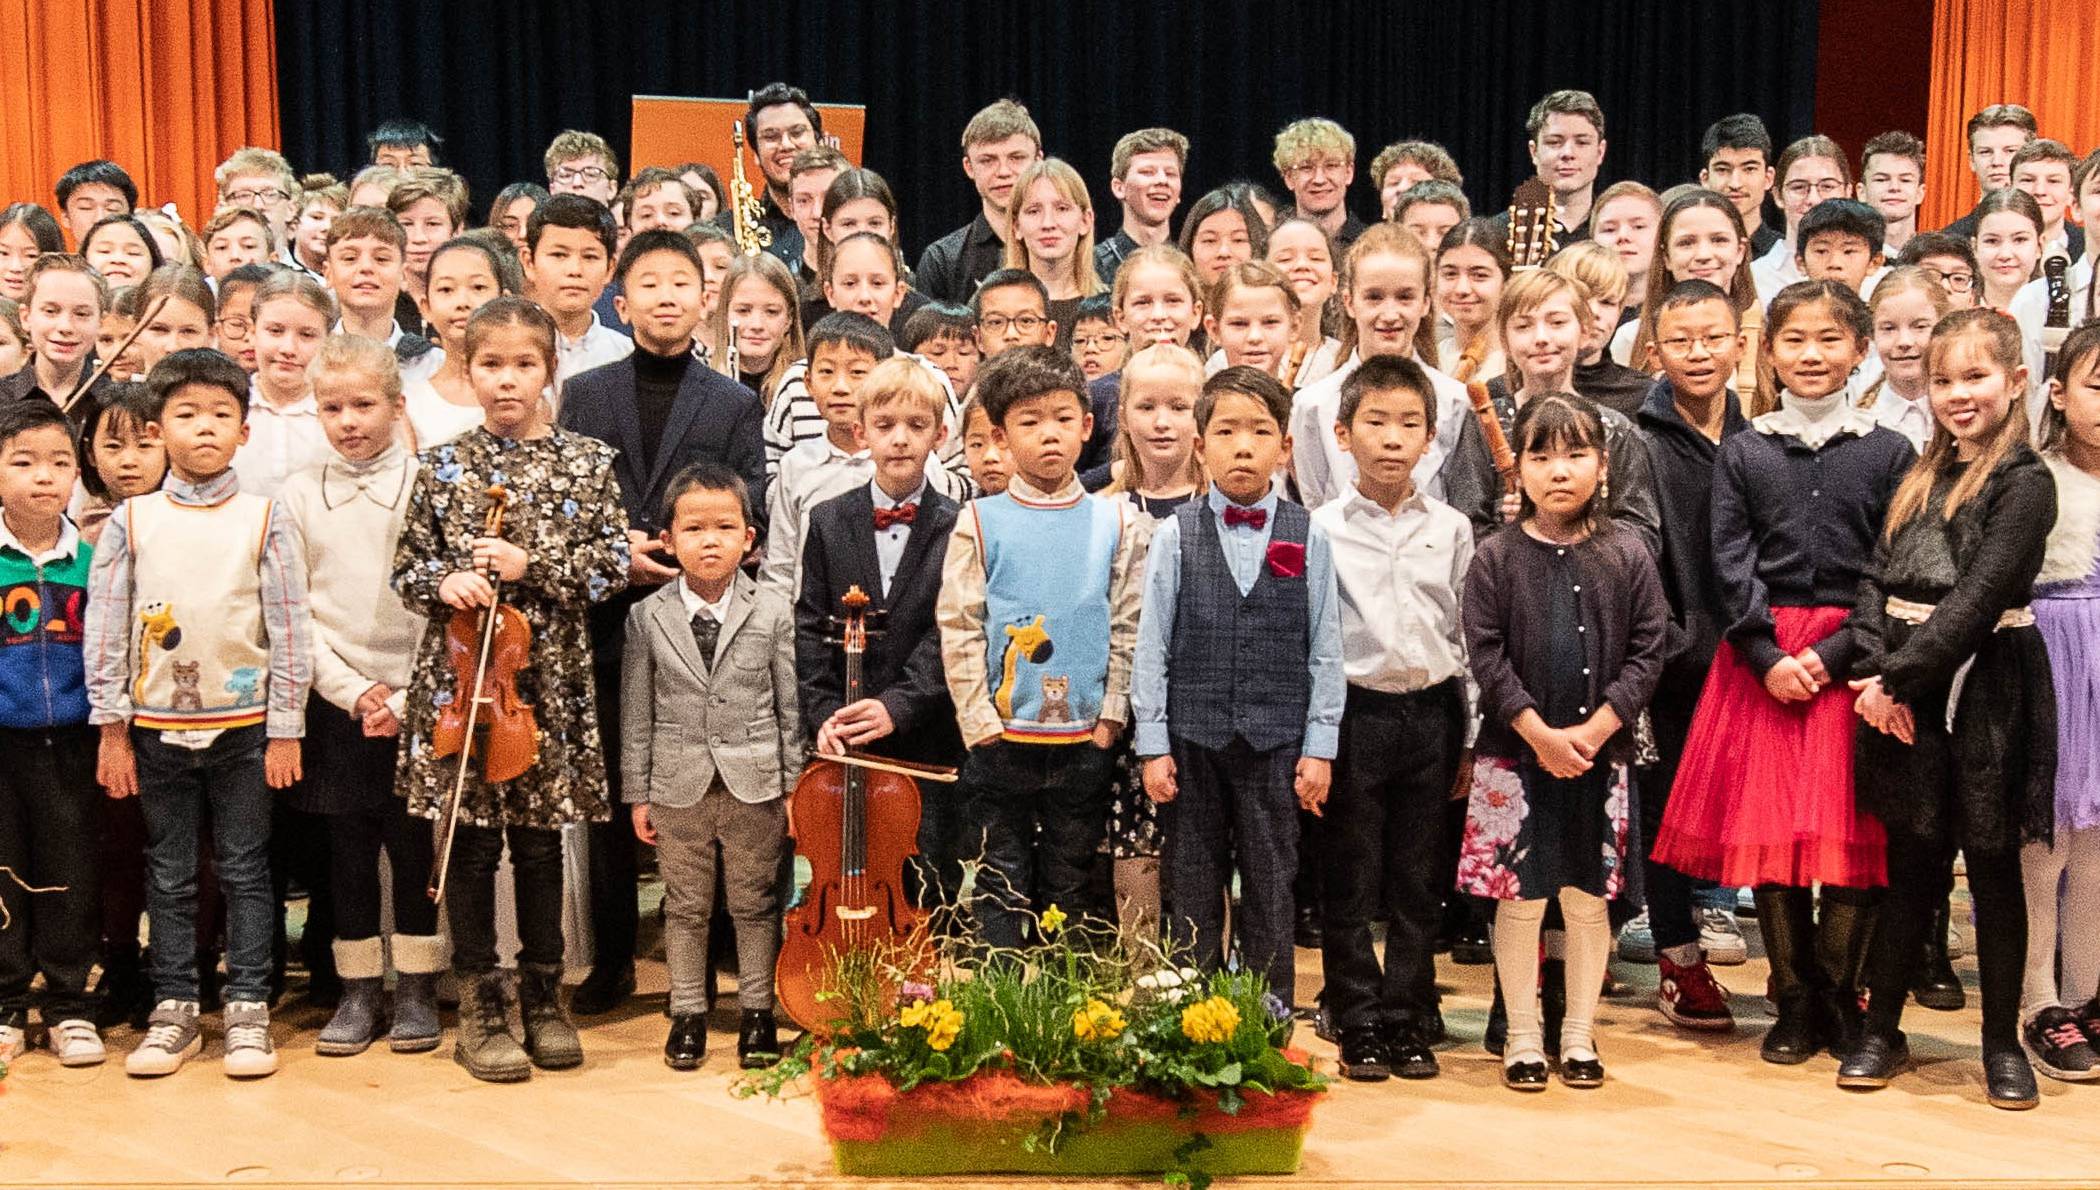 Die Preisträger beim Abschlusskonzert des Regionalwettbewerbs „Jugend musiziert“ in der Aula des Gymnasiums Korschenbroich.